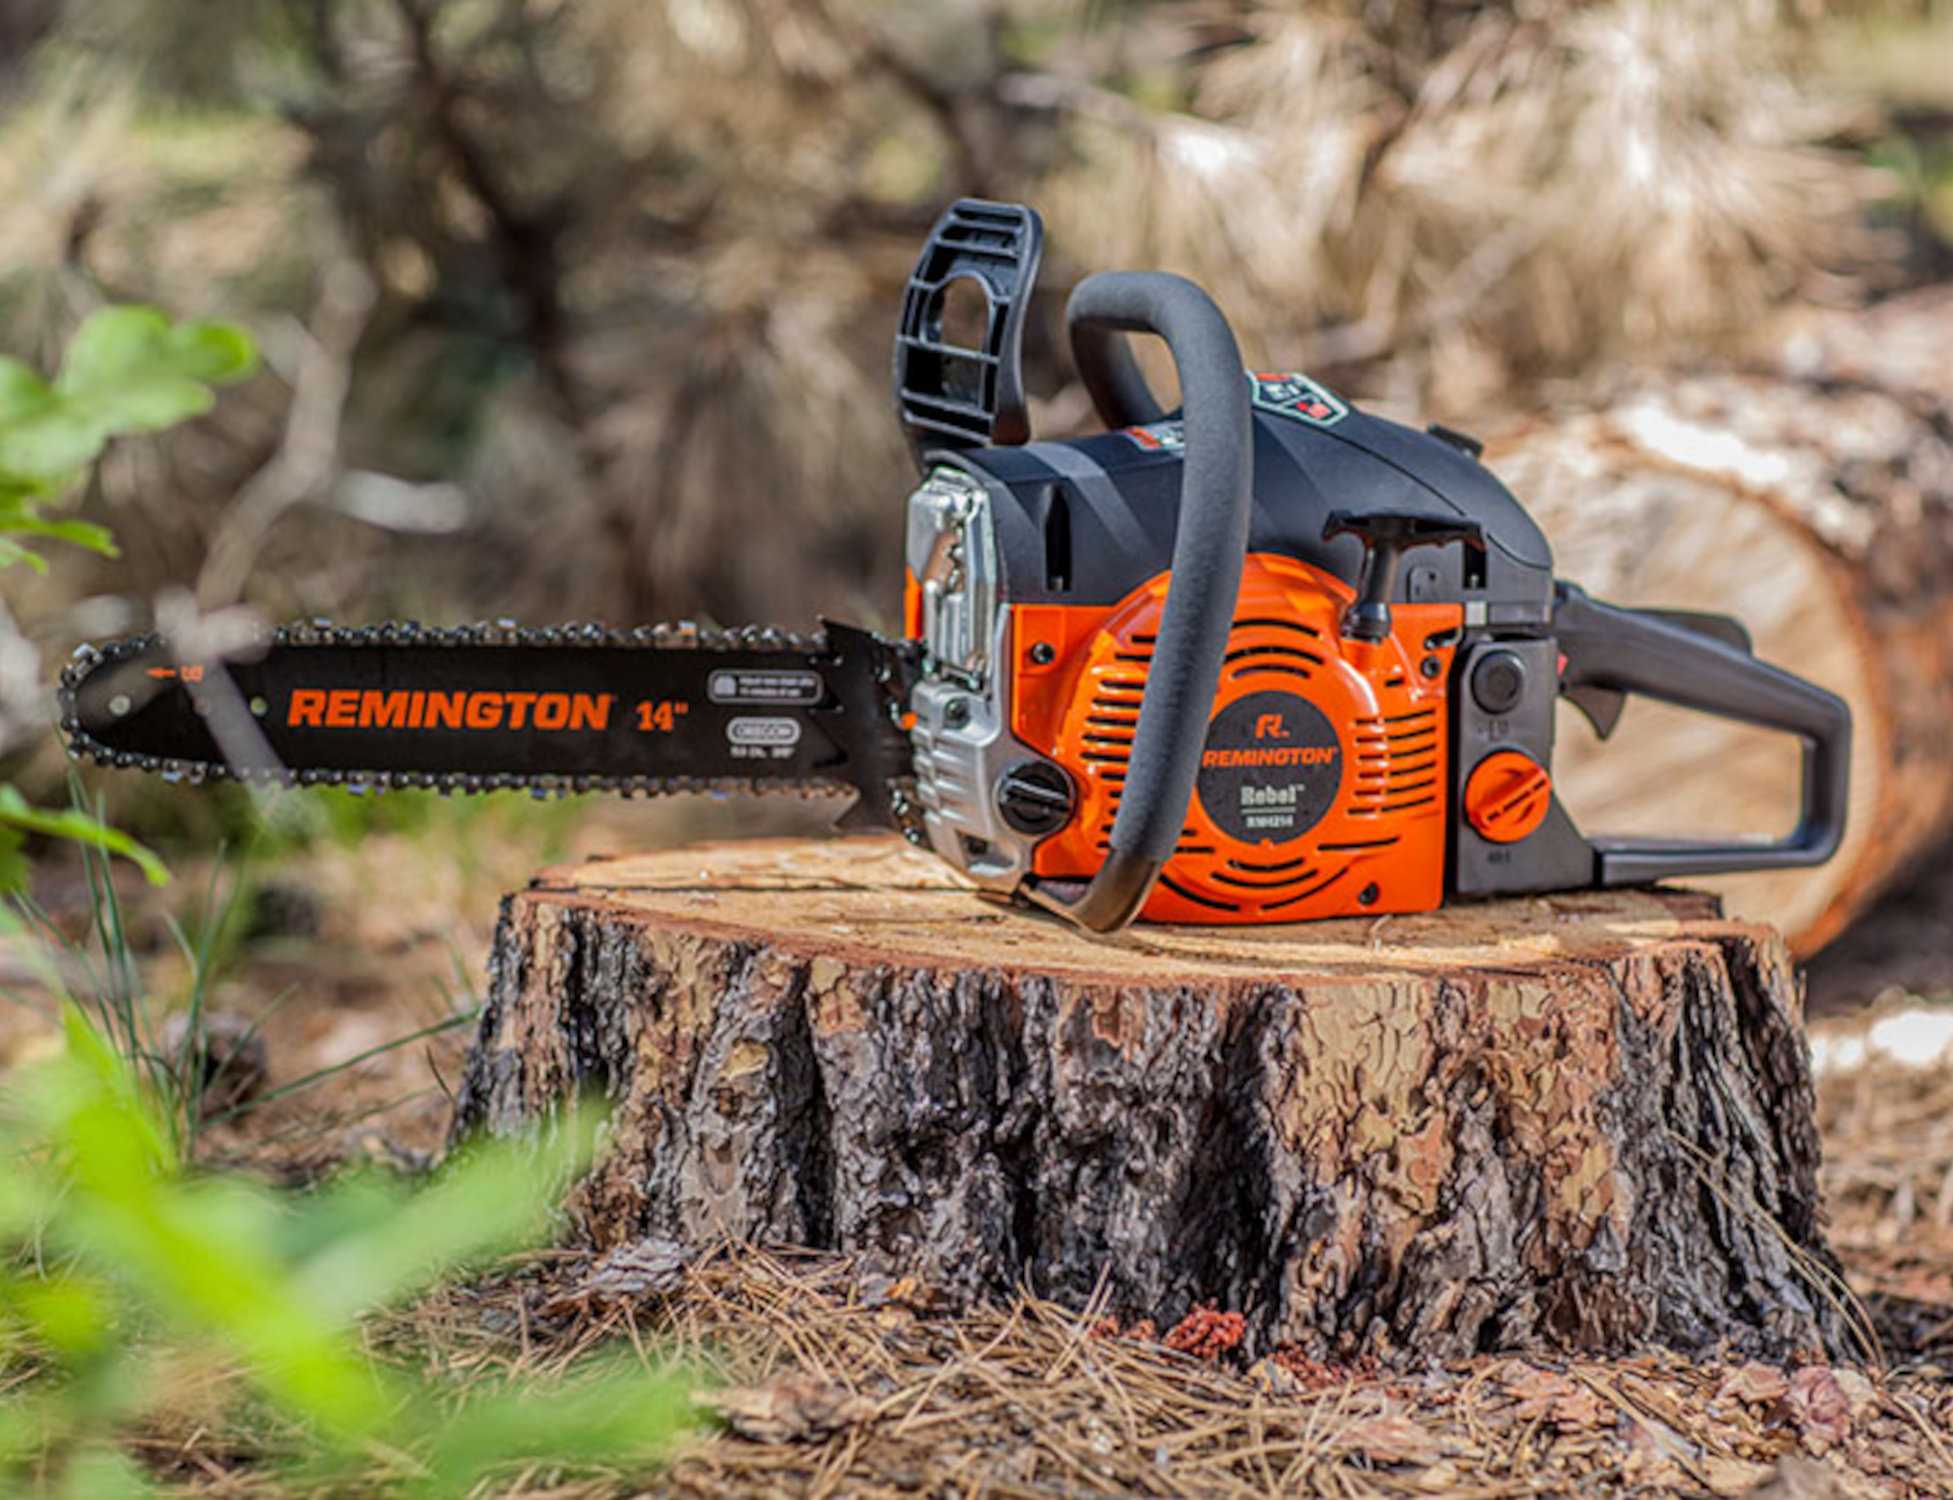 Remington RM4214 Rebel gas chainsaw